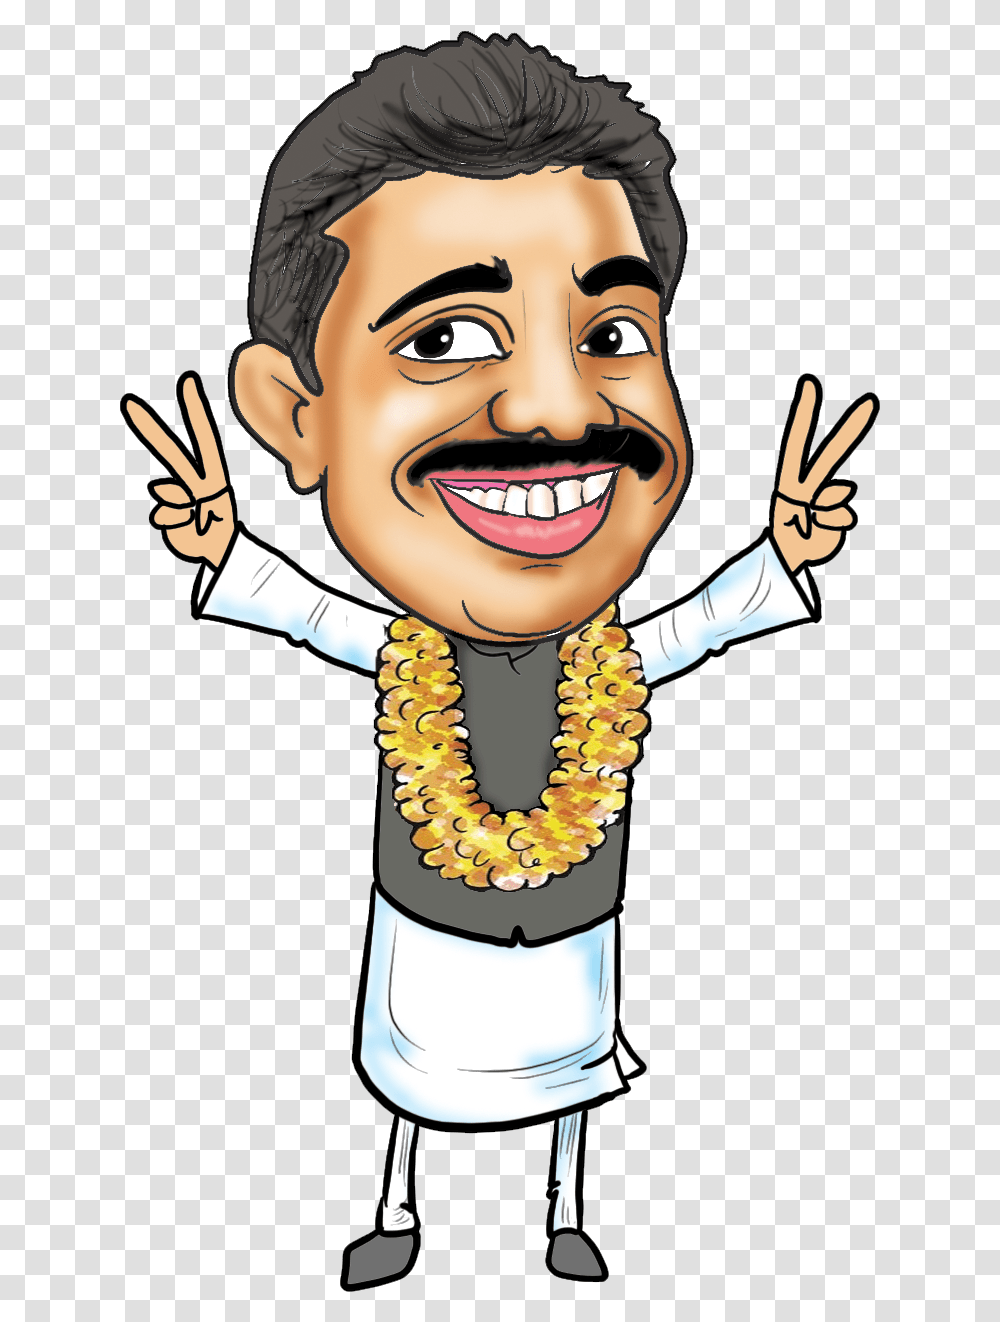 Indian Politician Cartoon, Person, Plant, Flower, Flower Arrangement Transparent Png